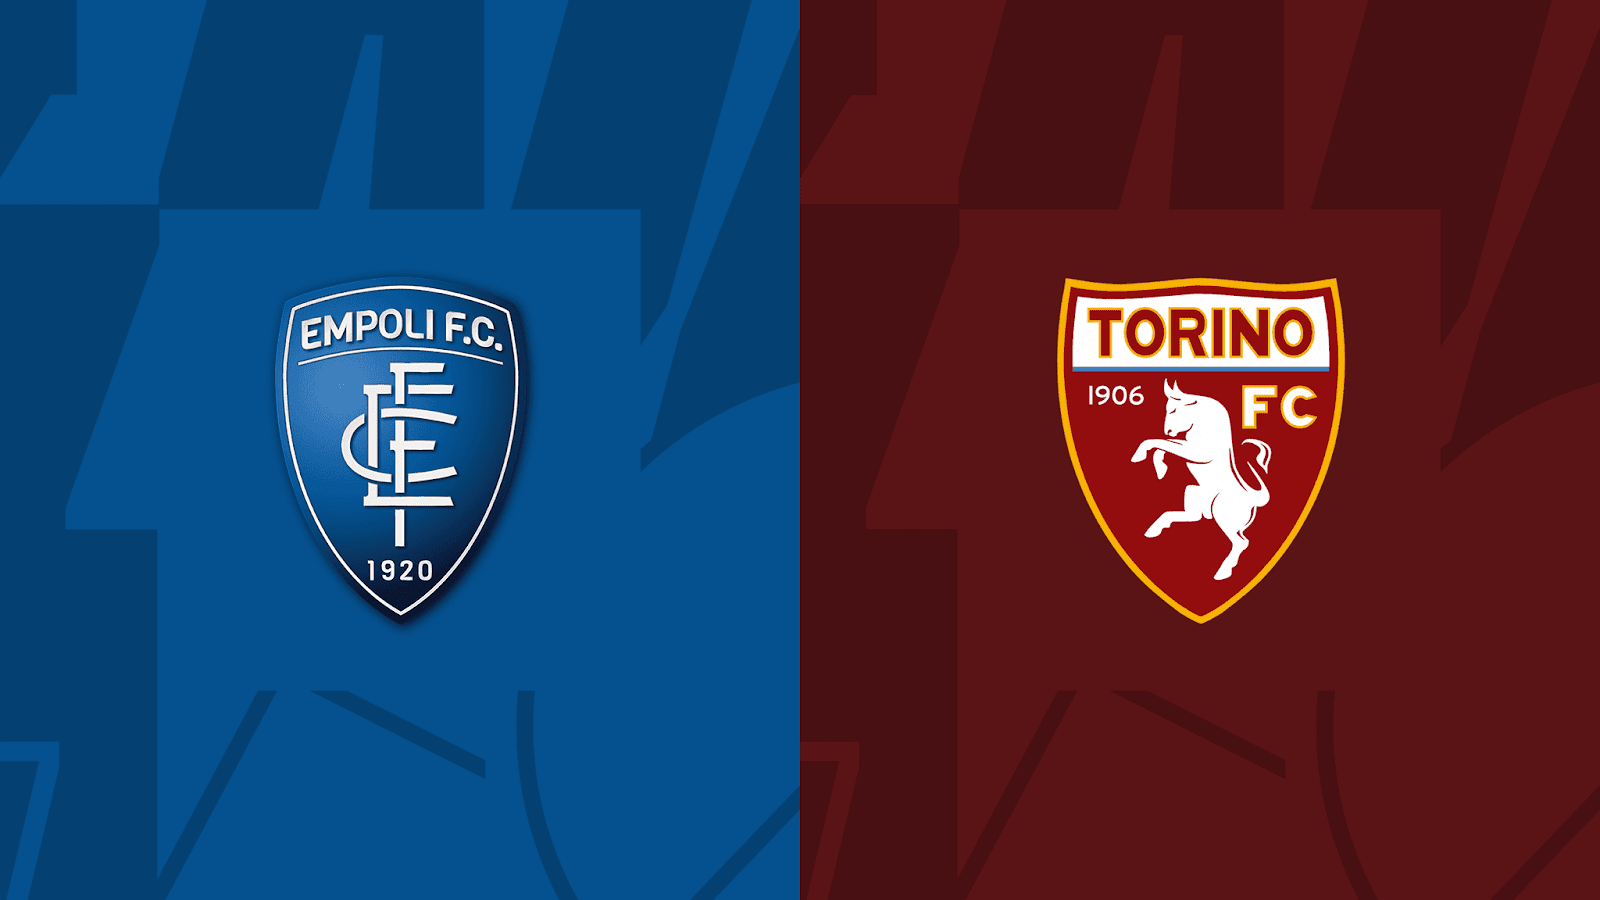 Giới thiệu tổng quan về 2 đội Empoli vs Torino